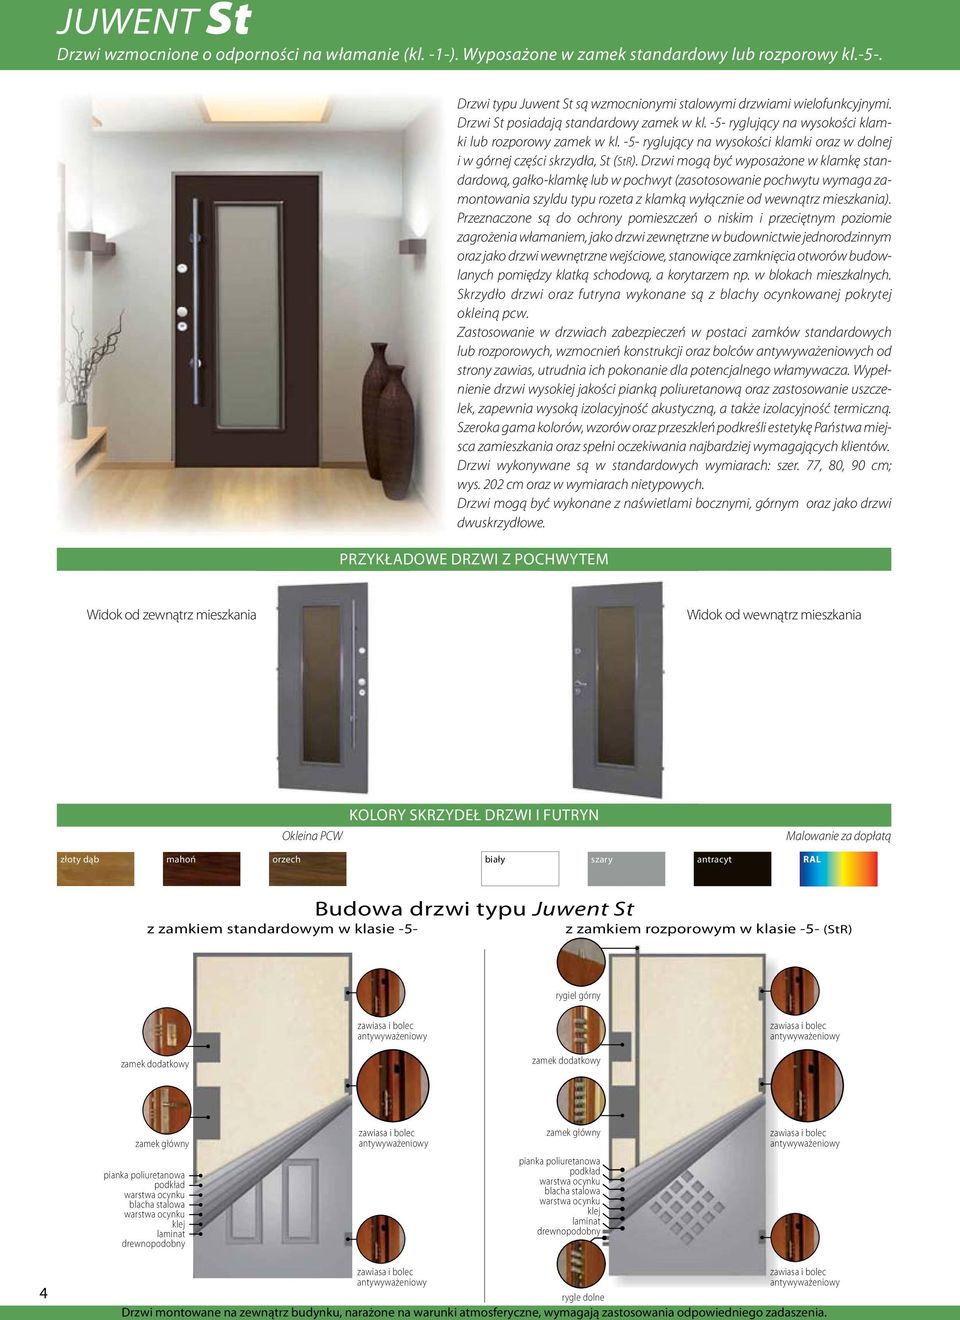 Drzwi mogą być wyposażone w klamkę standardową, gałko-klamkę lub w pochwyt (zasotosowanie pochwytu wymaga zamontowania szyldu typu rozeta z klamką wyłącznie od wewnątrz mieszkania).